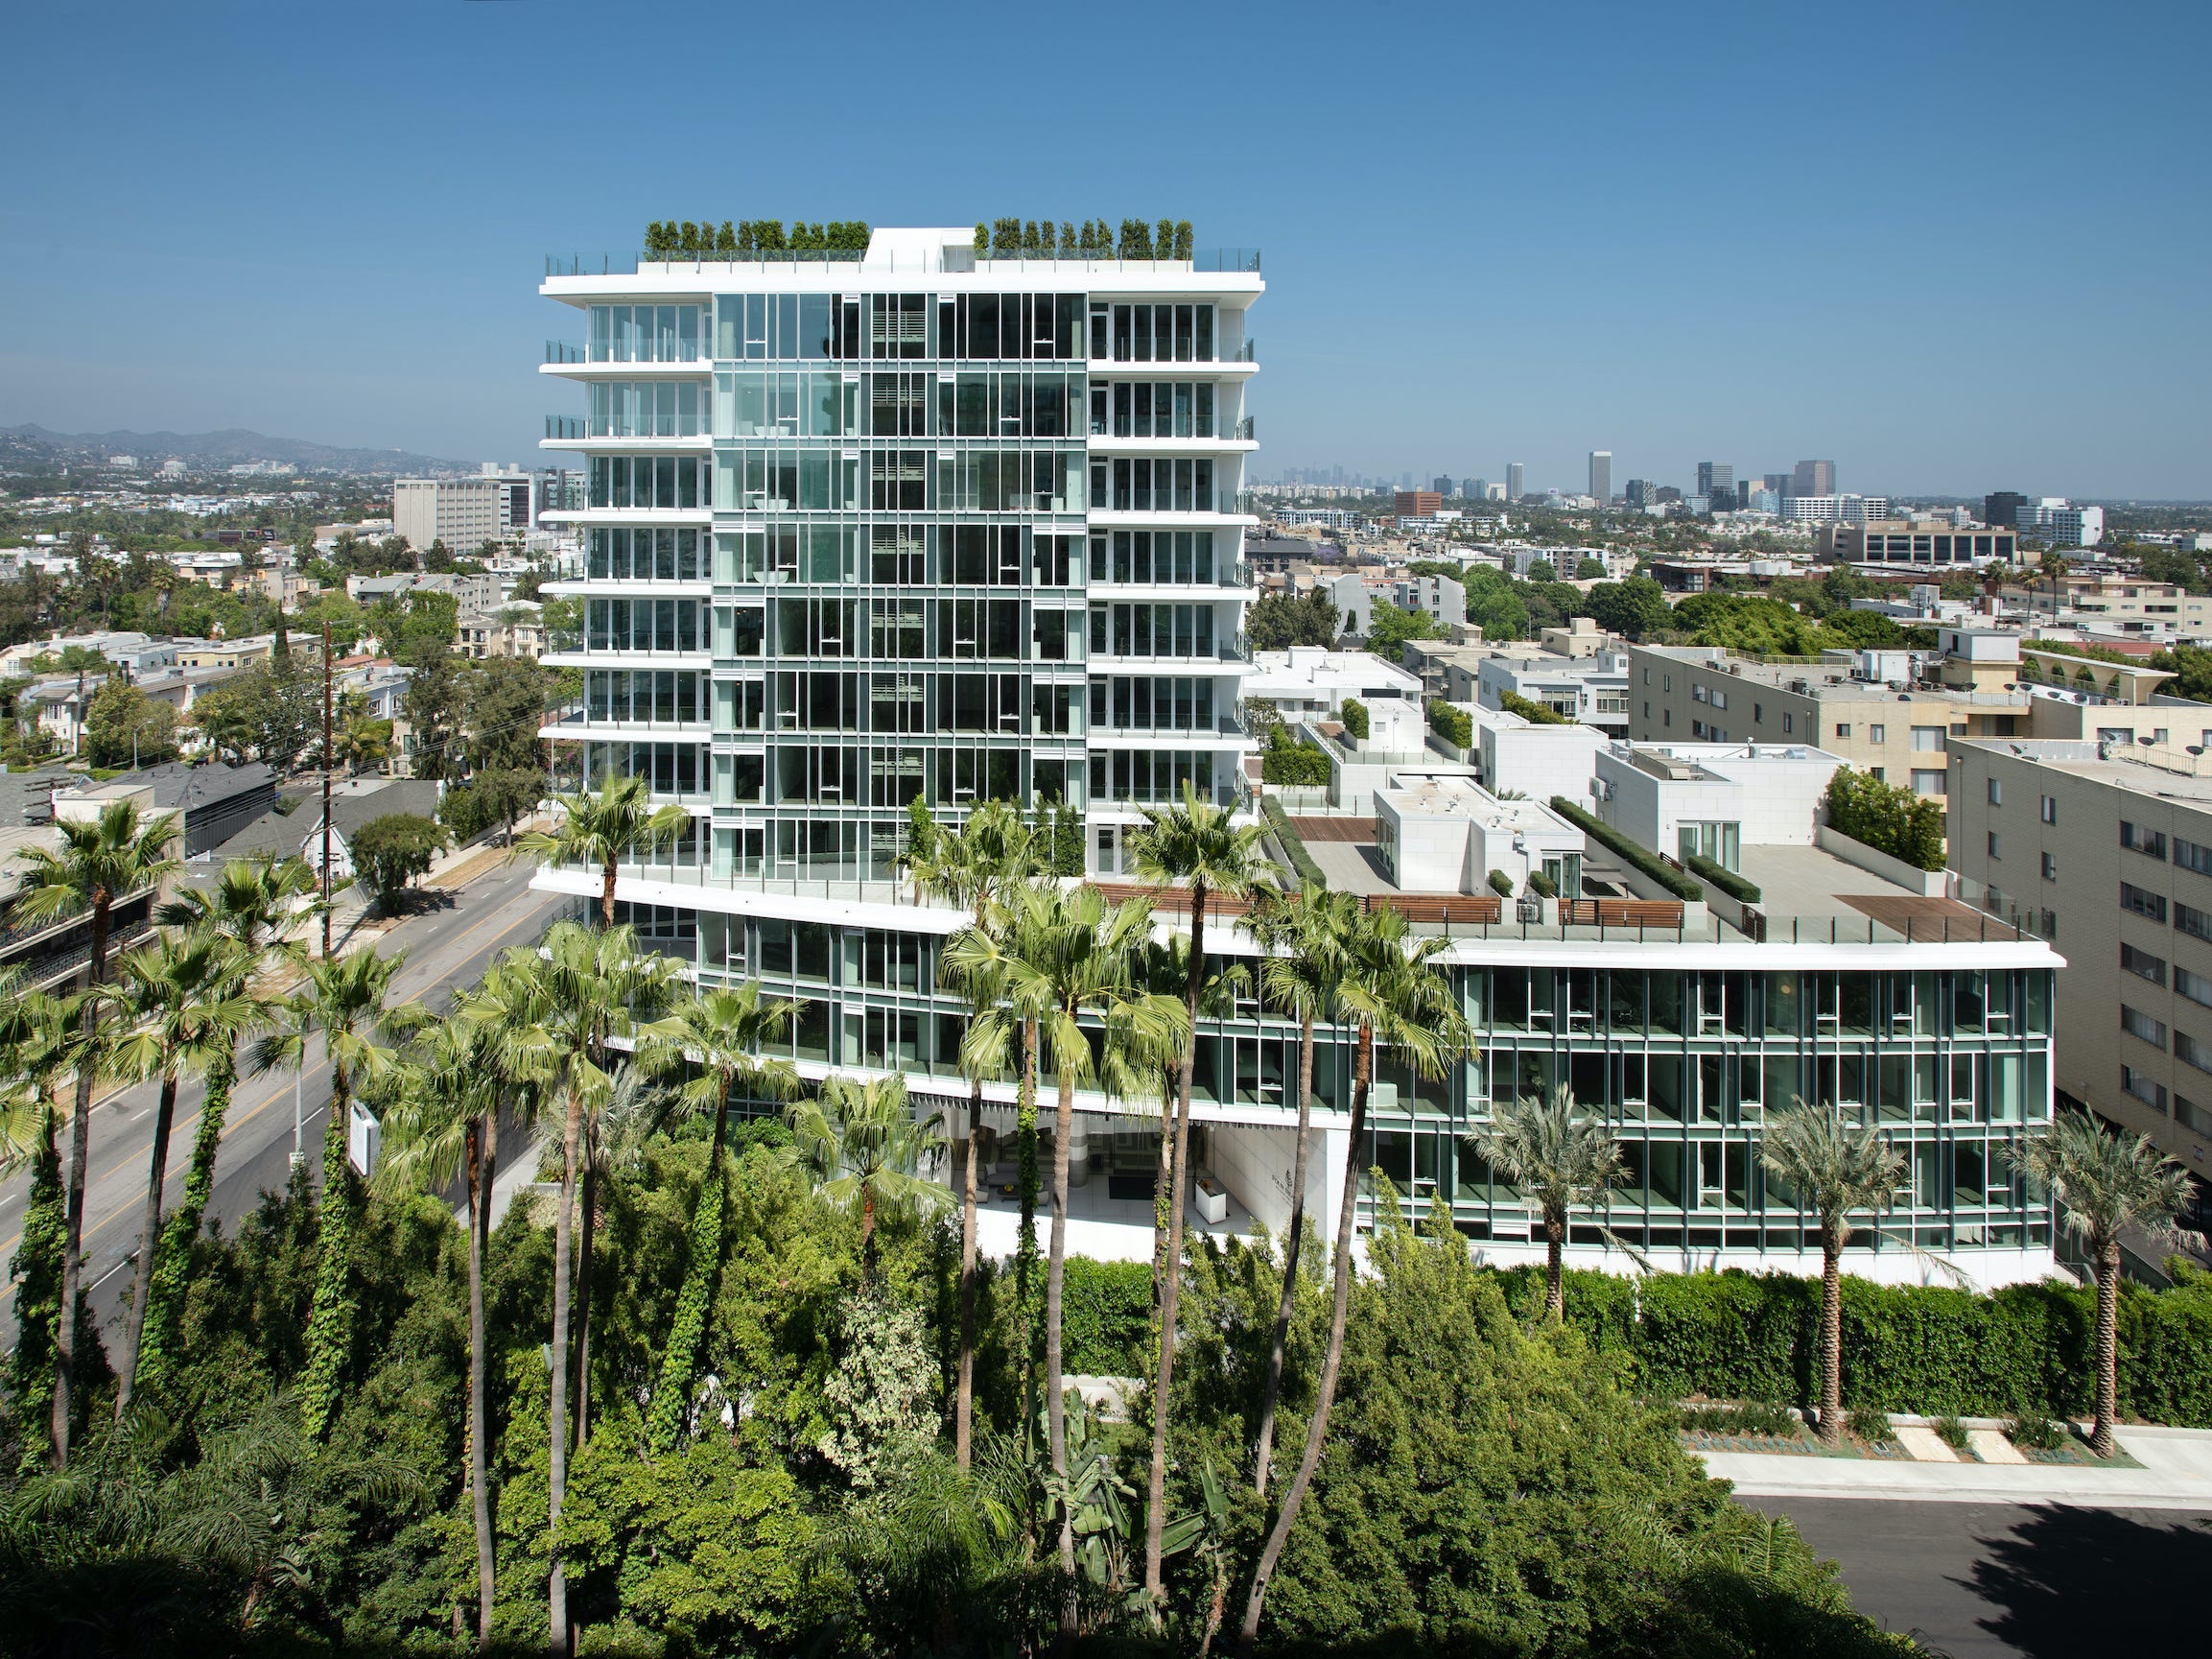 Die Four Seasons Private Residences Los Angeles von Palmen und anderen Gebäuden vor blauem Himmel.